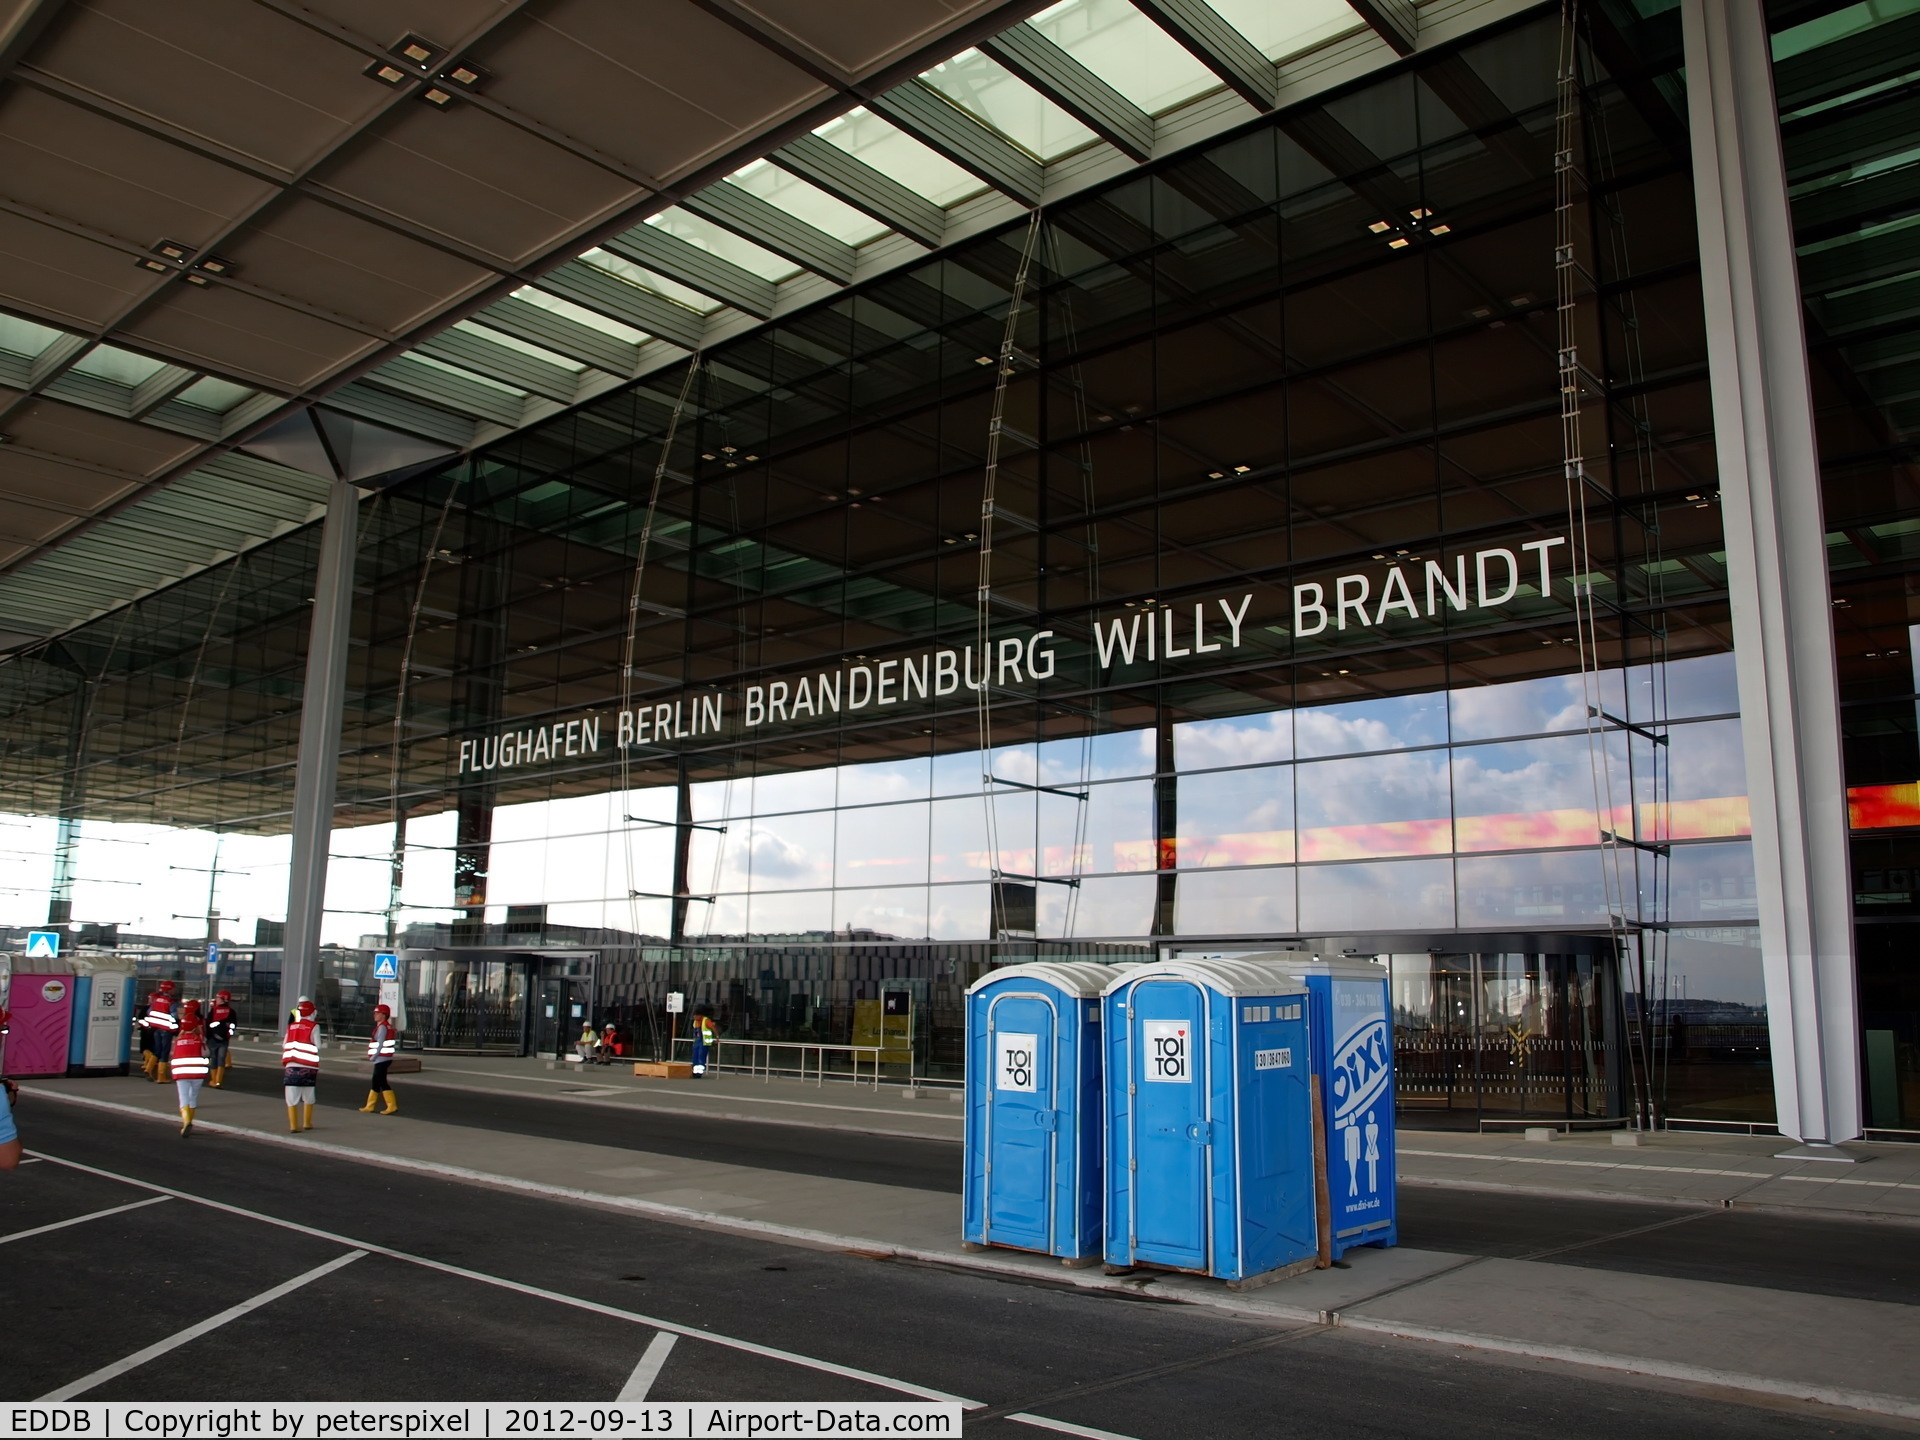 Berlin Brandenburg International Airport, Berlin Germany (EDDB) - Rundgang durch den Flughafen Berlin- Brandenburg (tour of Berlin- Brandenburg Airport)